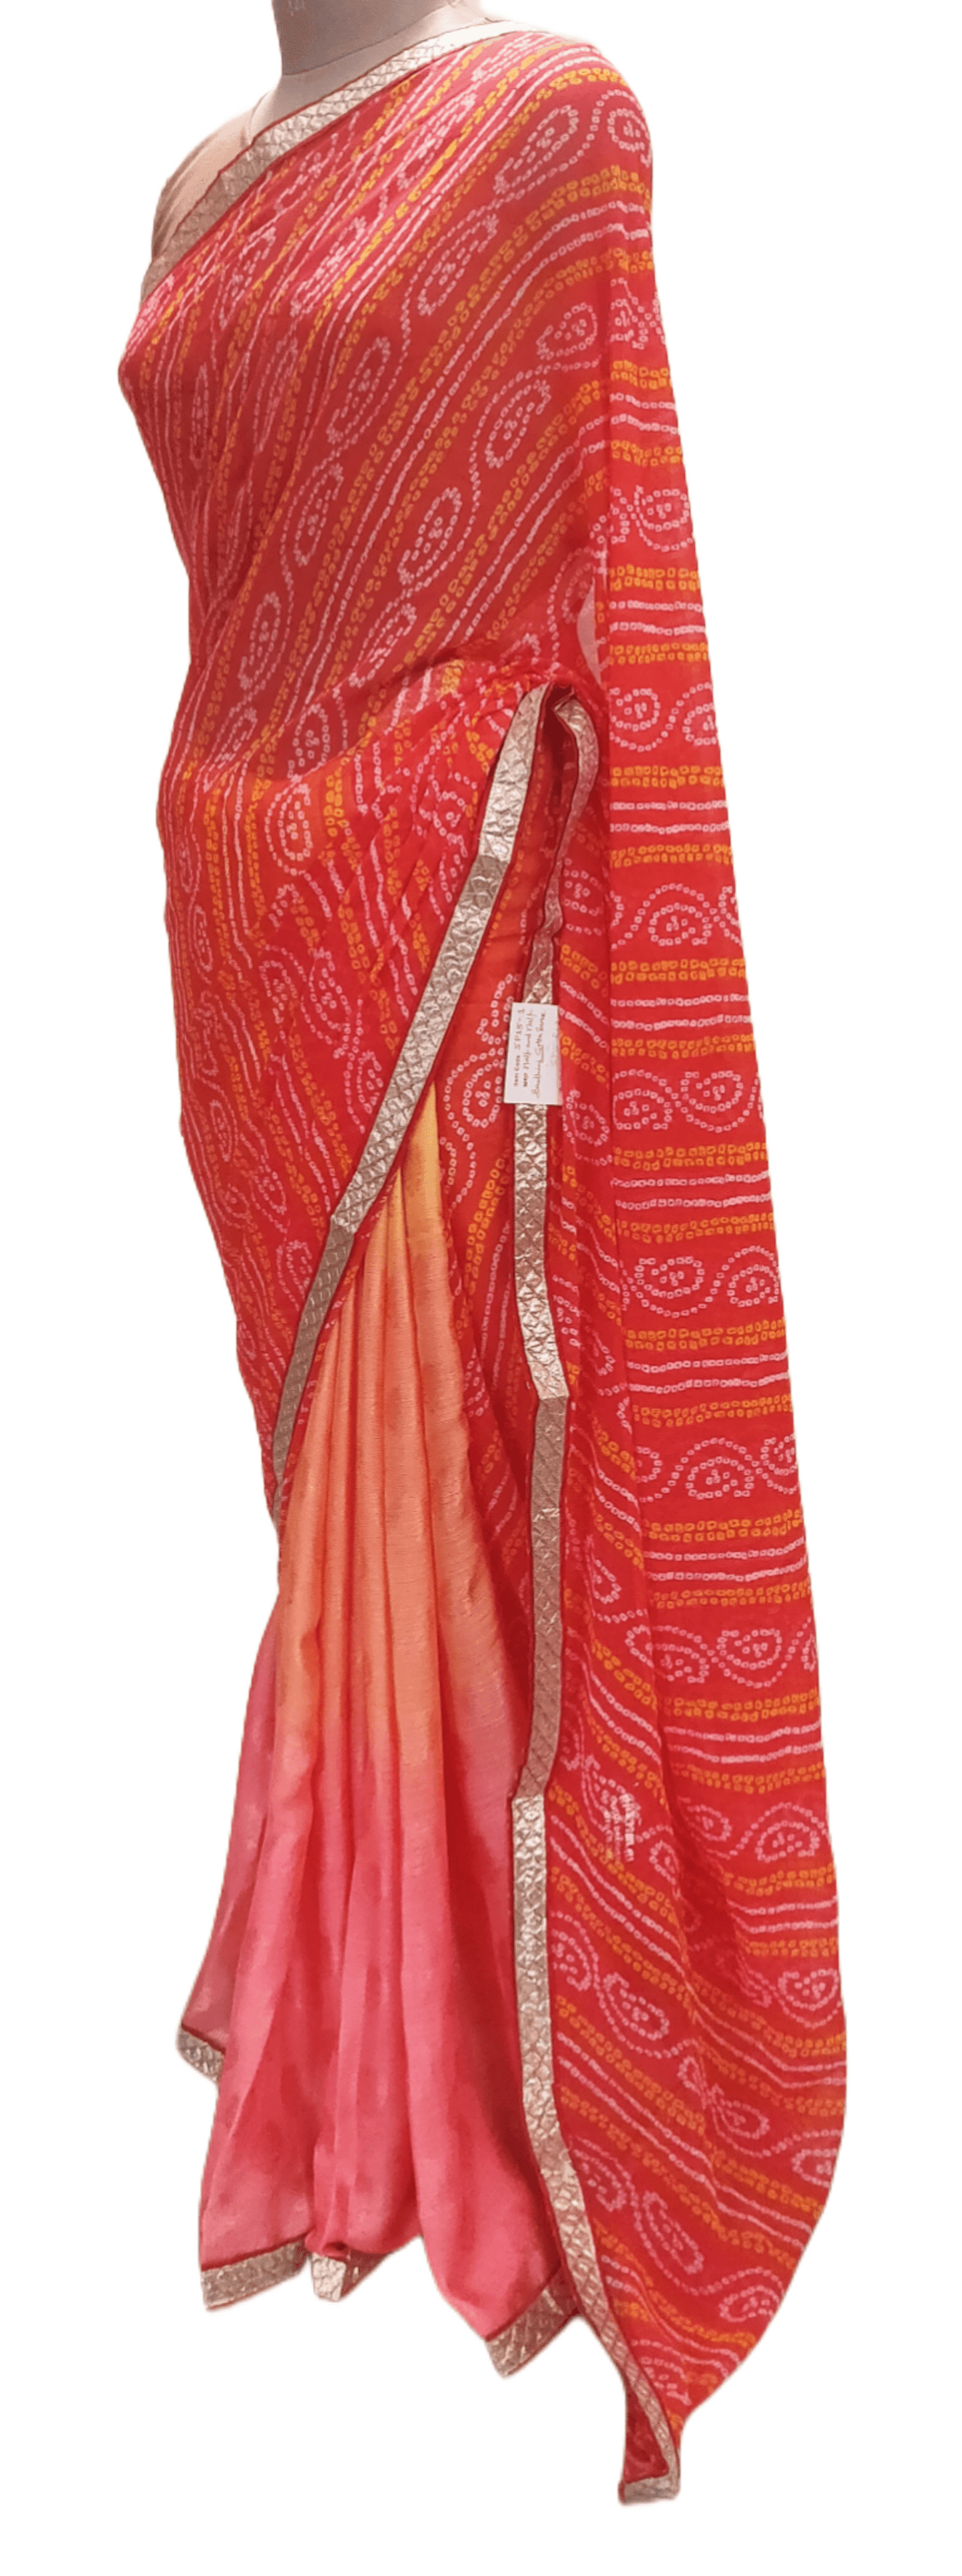 Designer Carrot Pink Printed Bandhej Bandhani Embellished Saree SP15 - Ethnic's By Anvi Creations